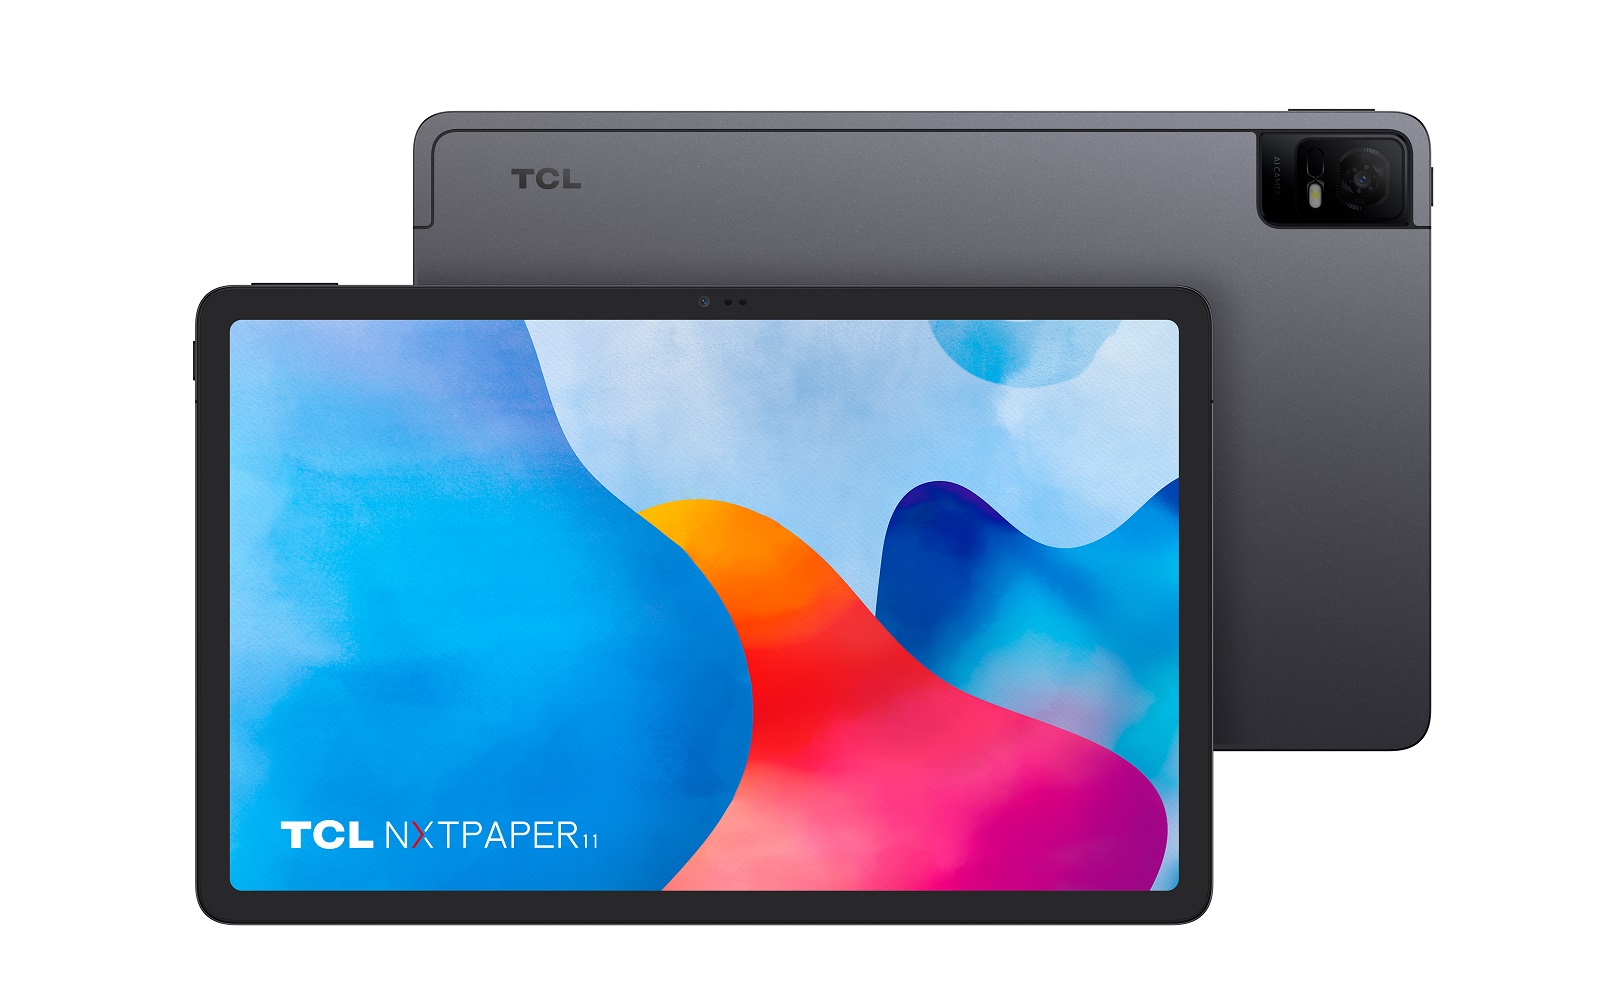 TCL NXTPAPER 11, la tableta antirreflejo, con tecnología NXTPAPER